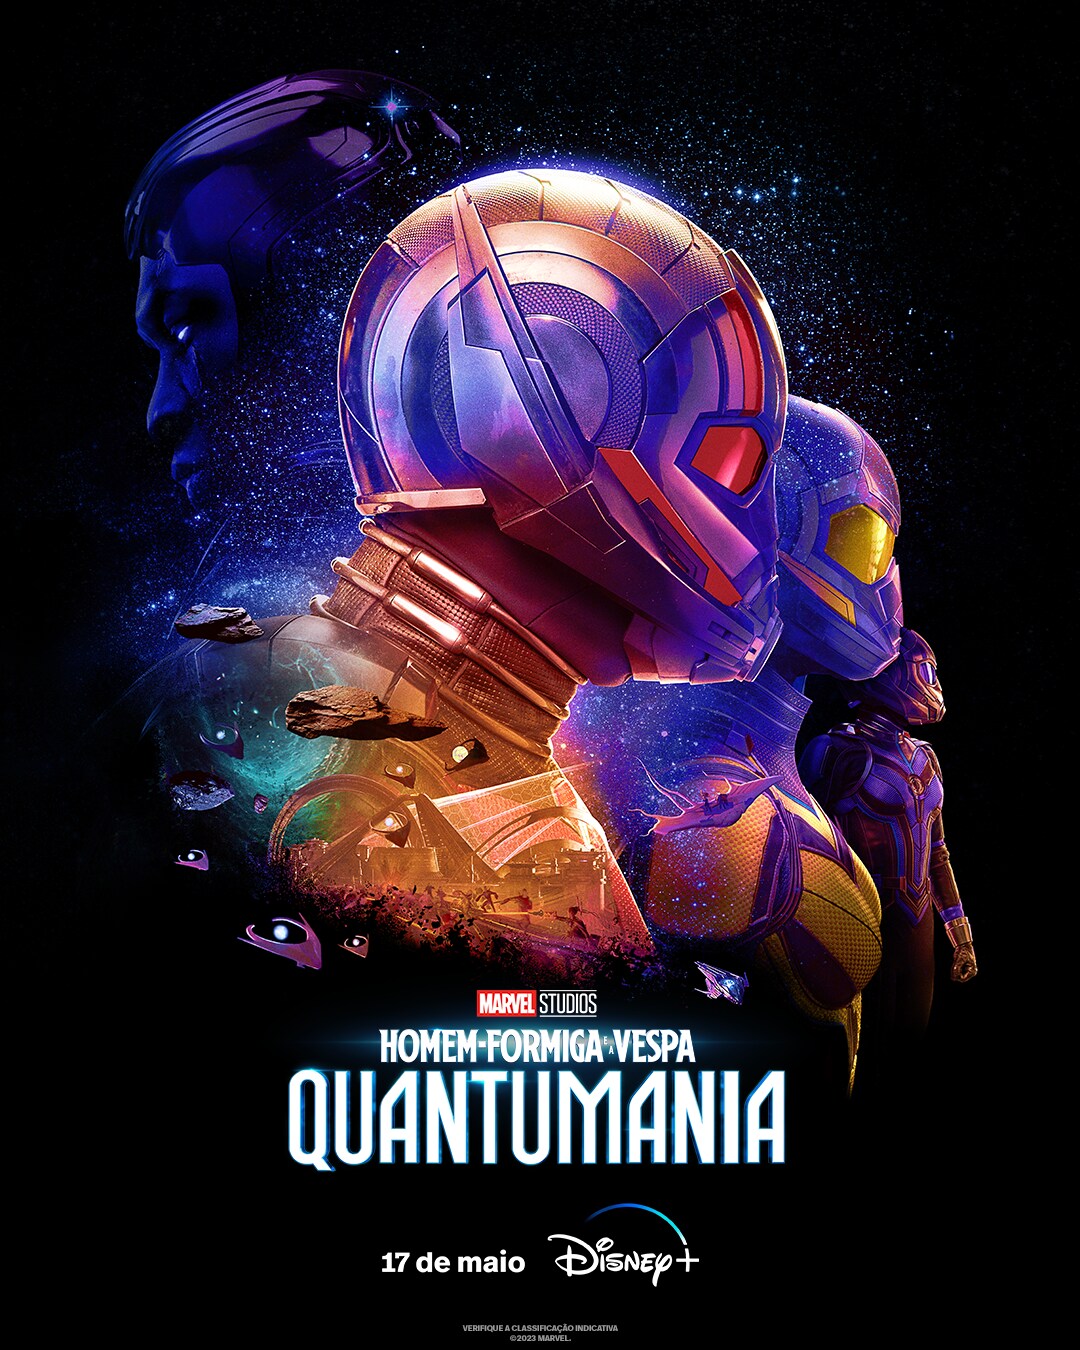 Homem-Formiga e a Vespa: Quantumania chegará no Disney+